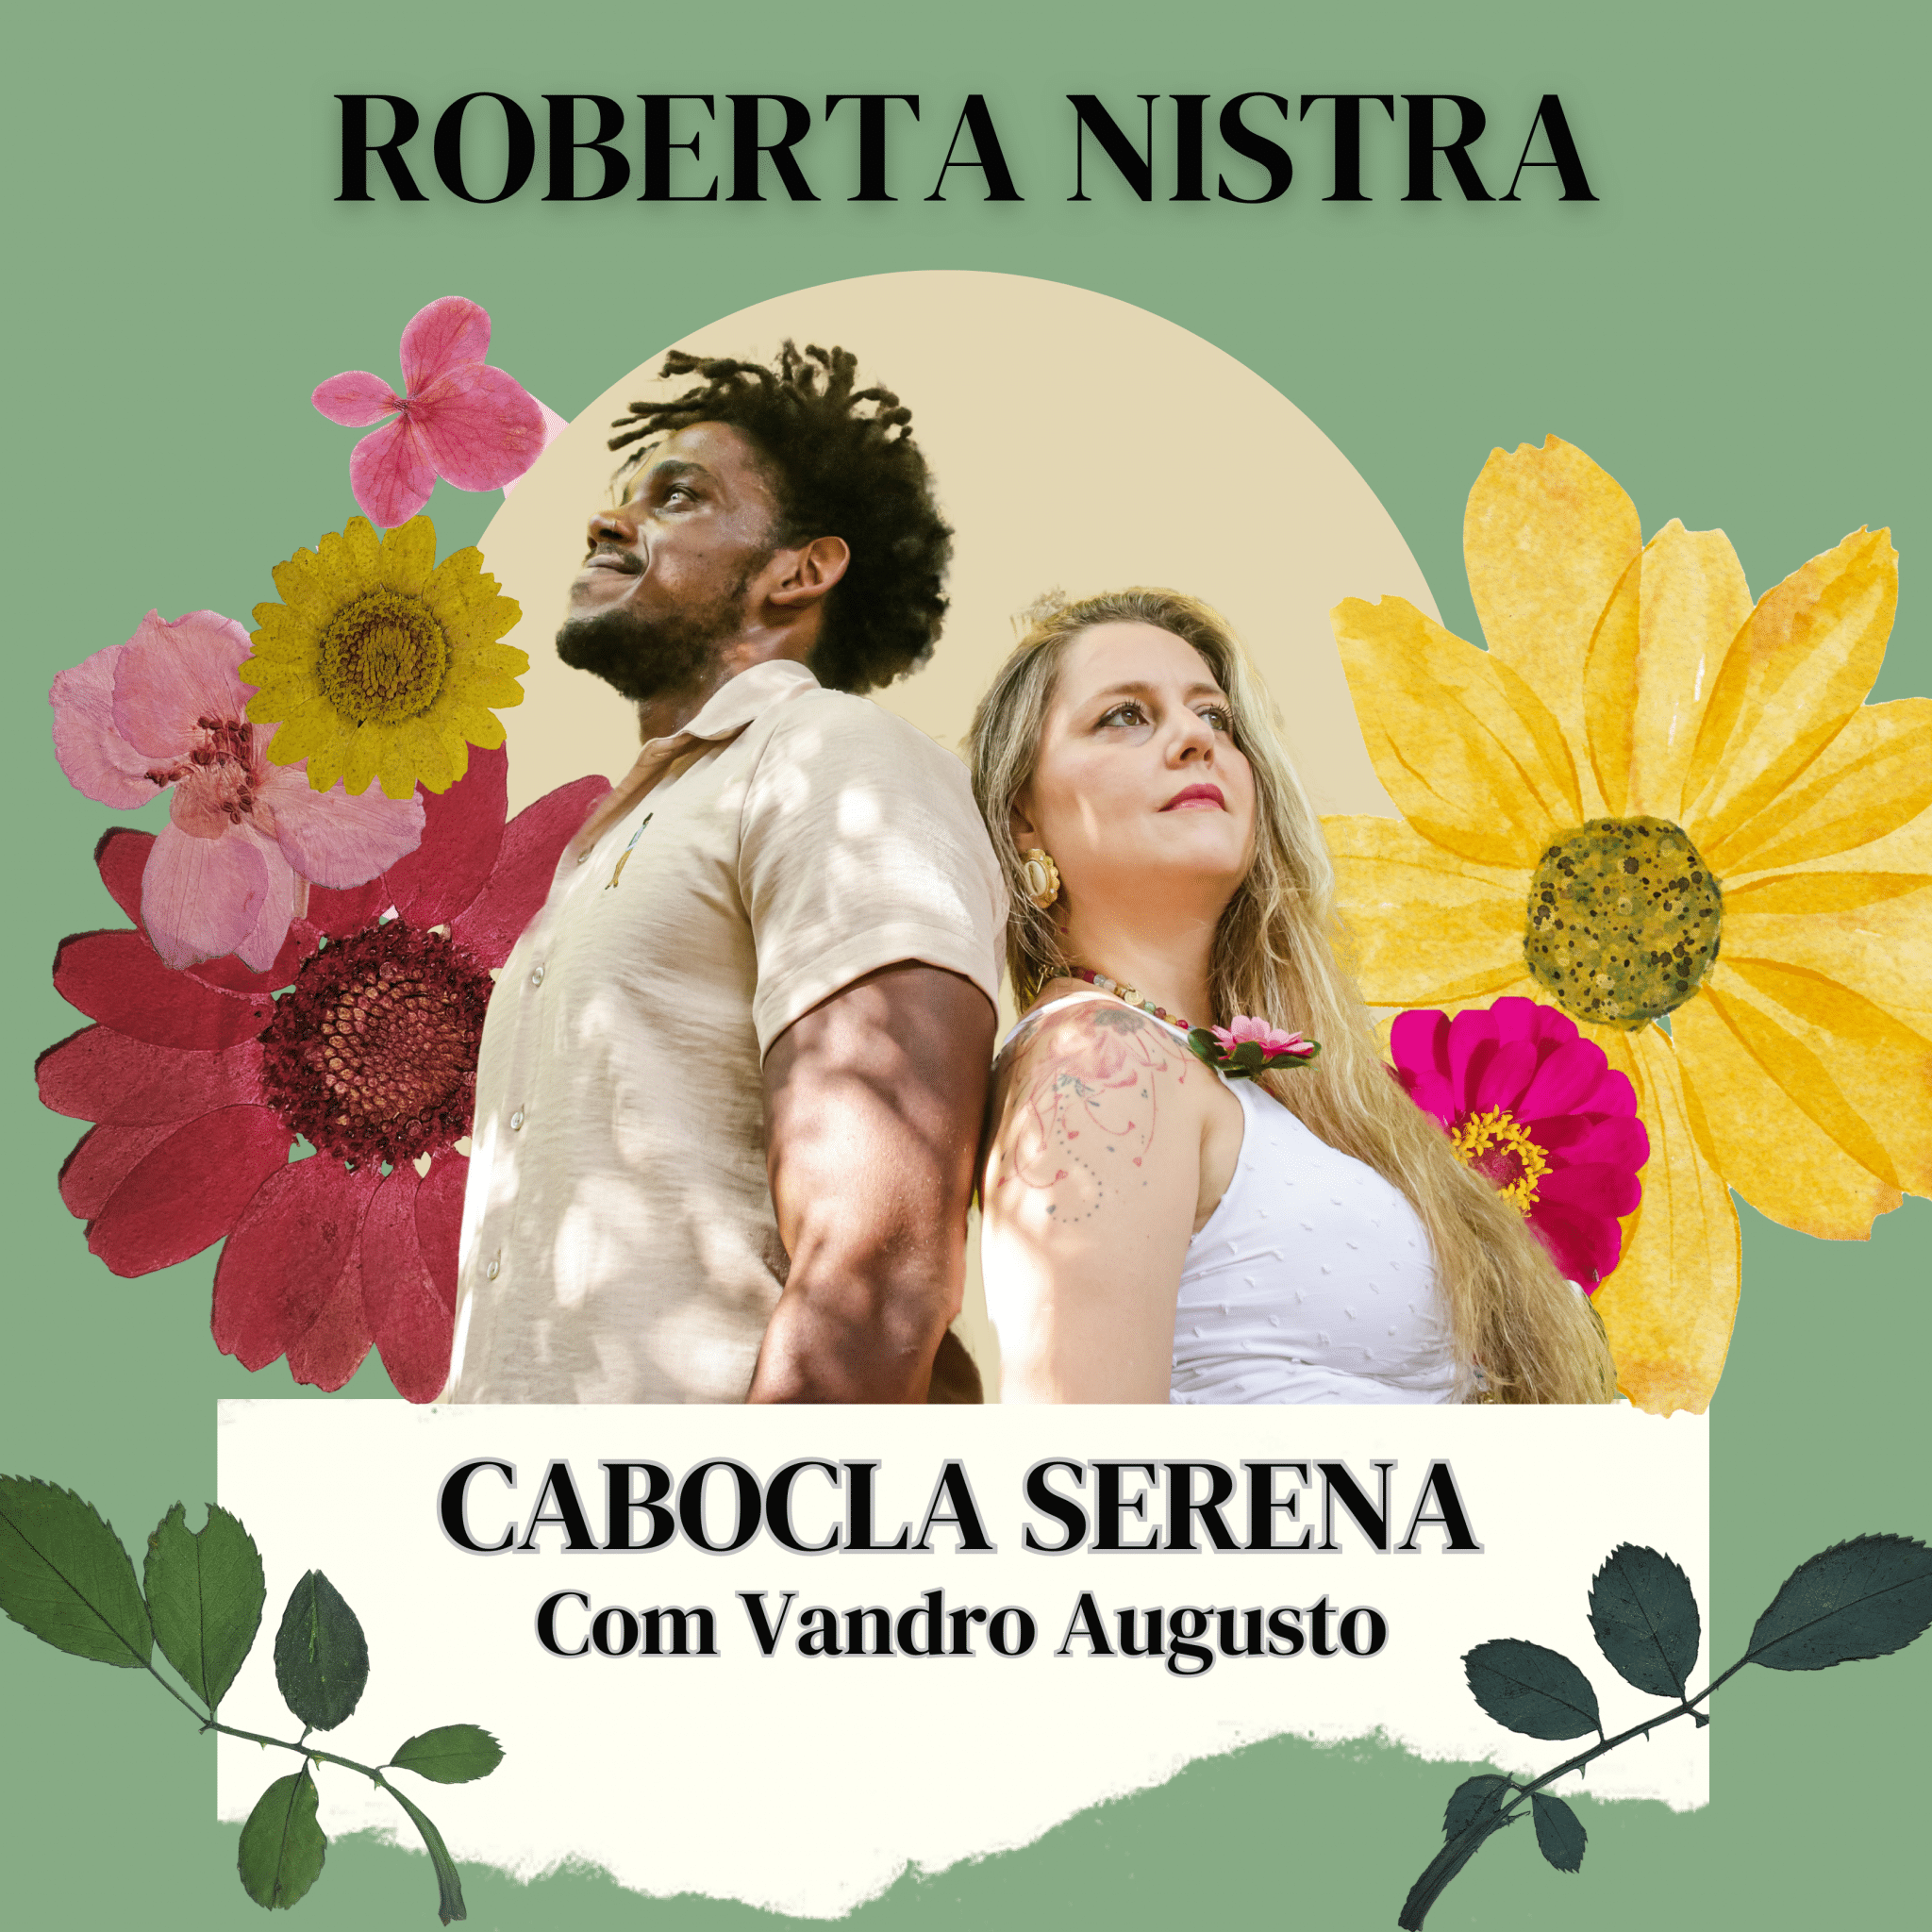 revistaprosaversoearte.com - 'Cabocla Serena', novo single da cantora e compositora Roberta Nistra